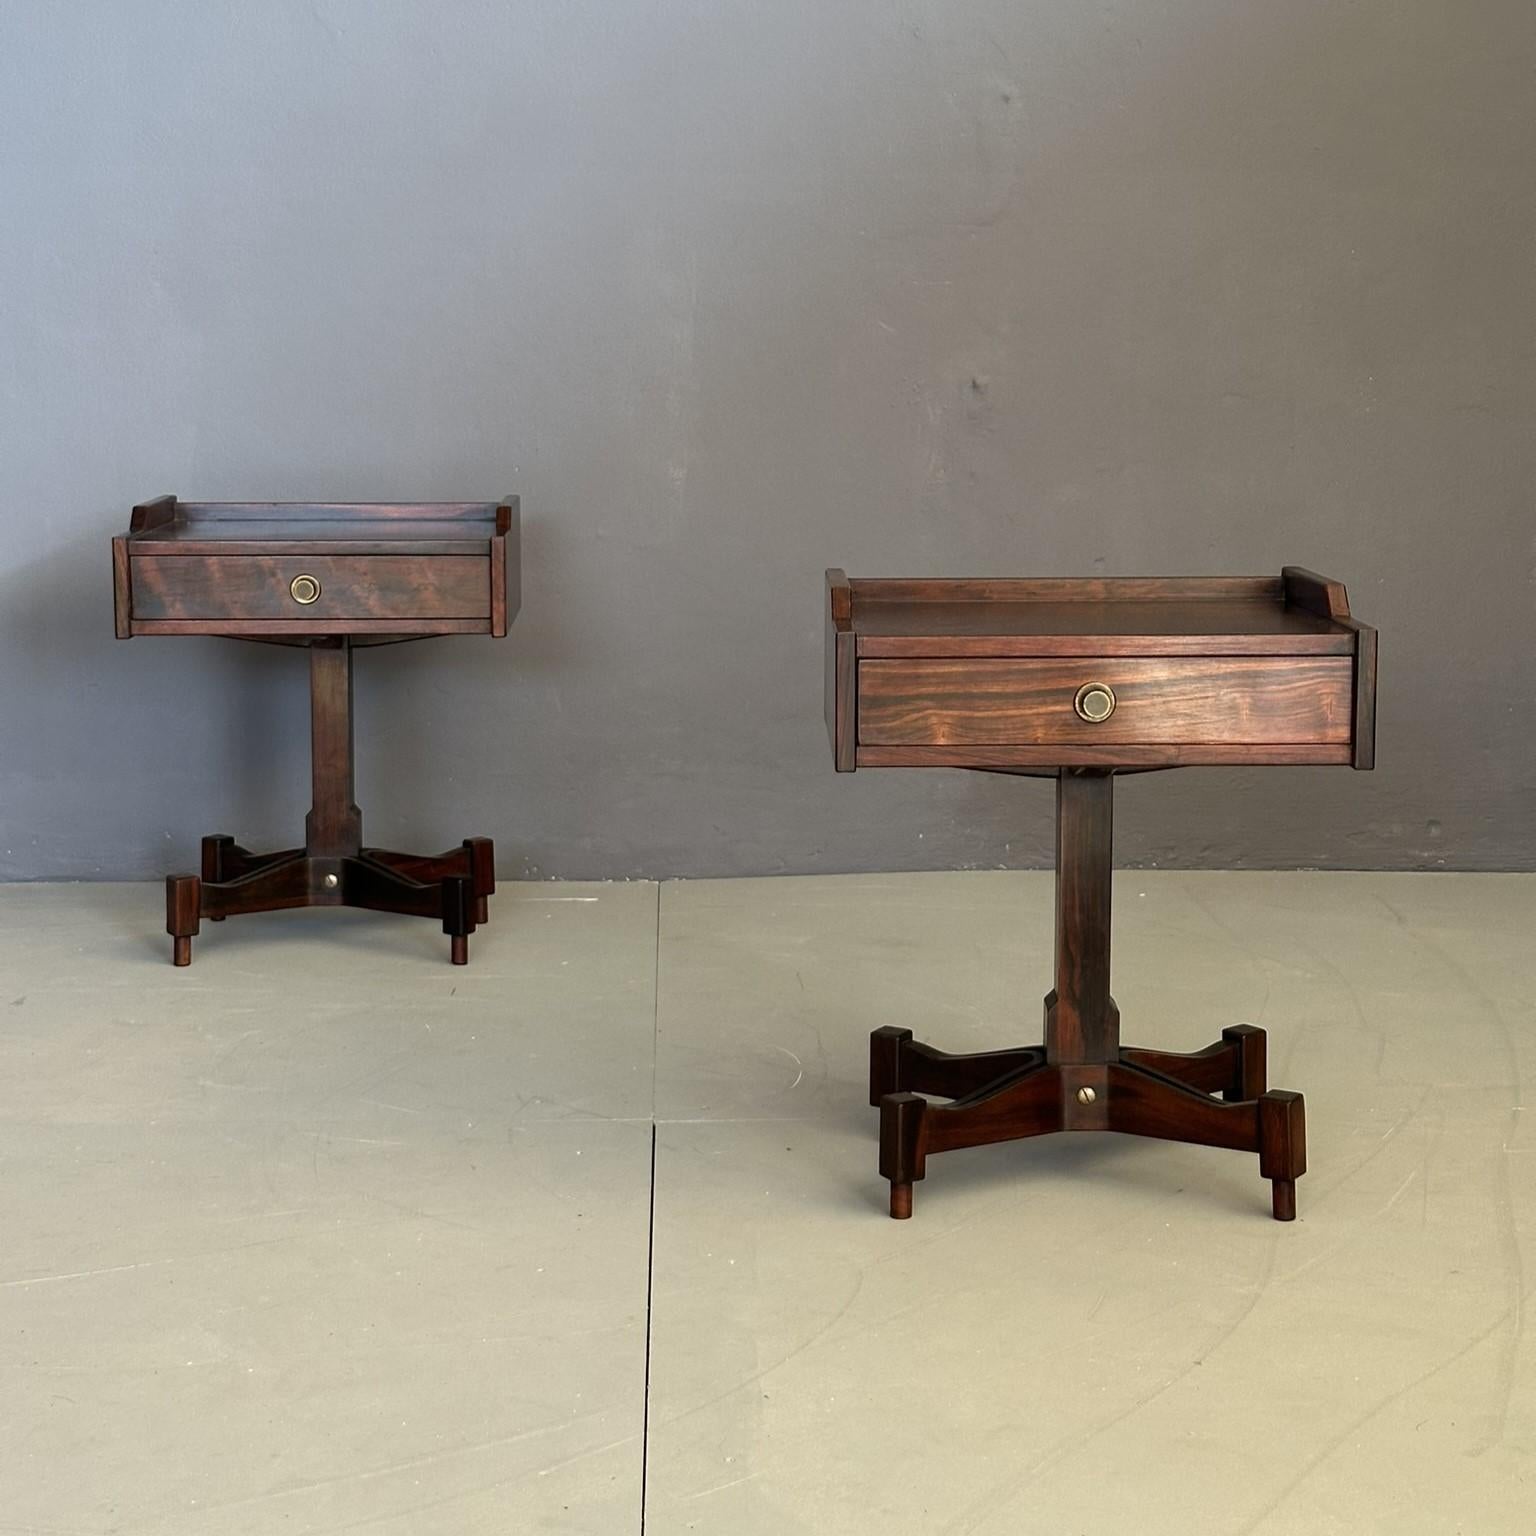 Paire de tables de chevet modèle SC-50 des années 1960, design de Claudio Salocchi pour Sormani, fabrication italienne.
Les tables de chevet en bois brun foncé ont un seul tiroir avec un bouton d'ouverture en laiton.
Le plateau repose sur un pied